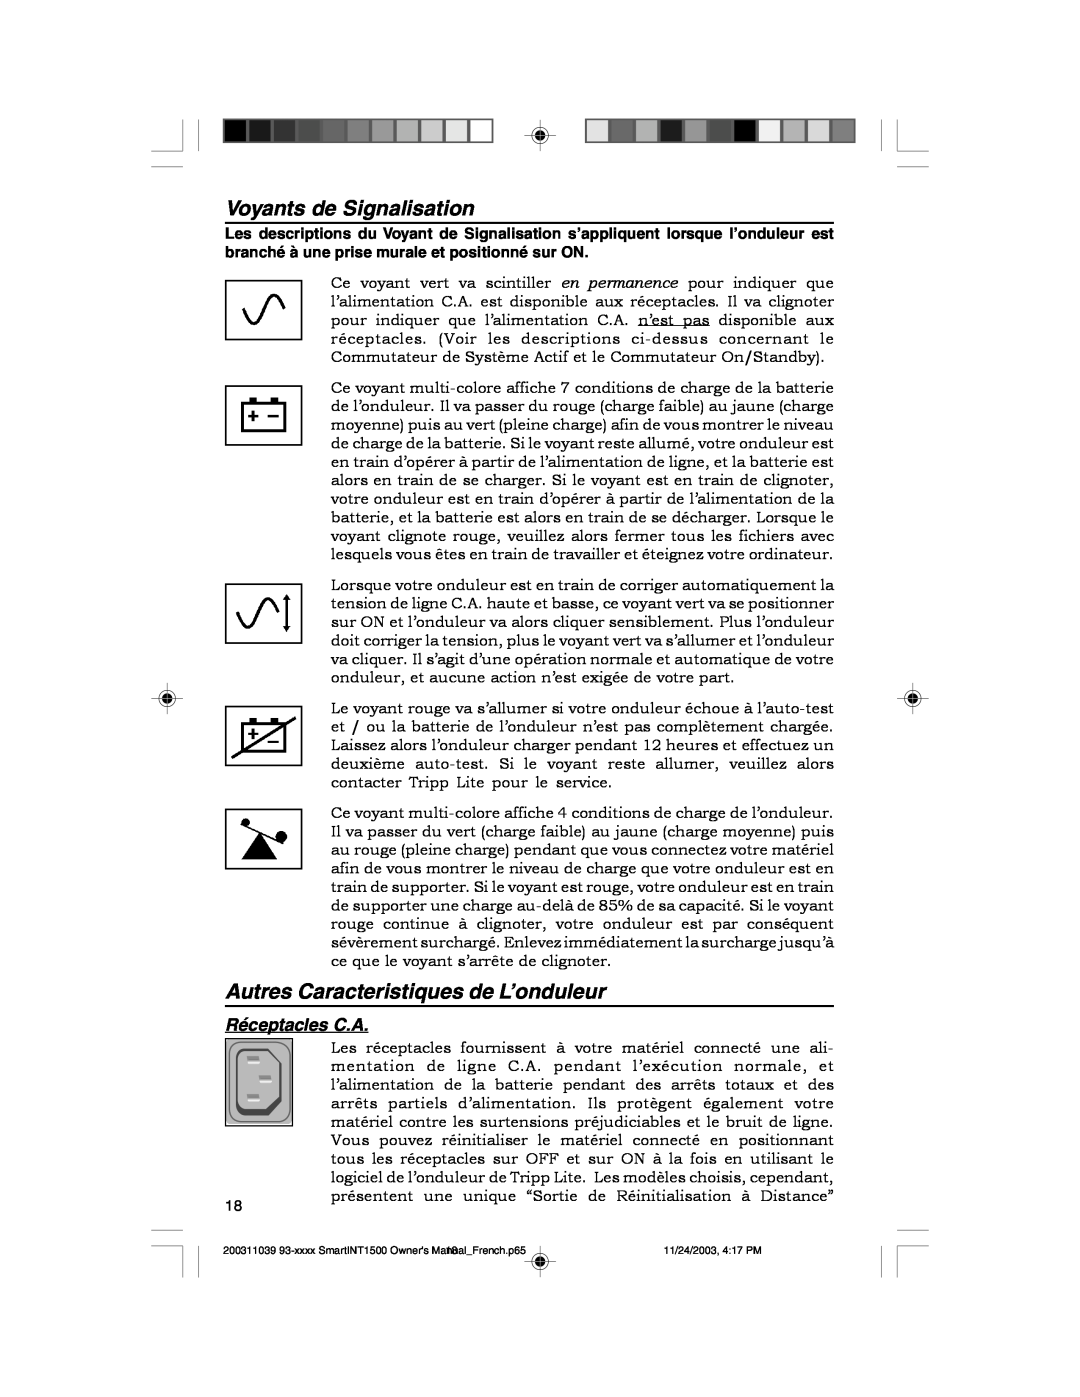 Tripp Lite 450-1500VA specifications Voyants de Signalisation, Autres Caracteristiques de L’onduleur, Réceptacles C.A 